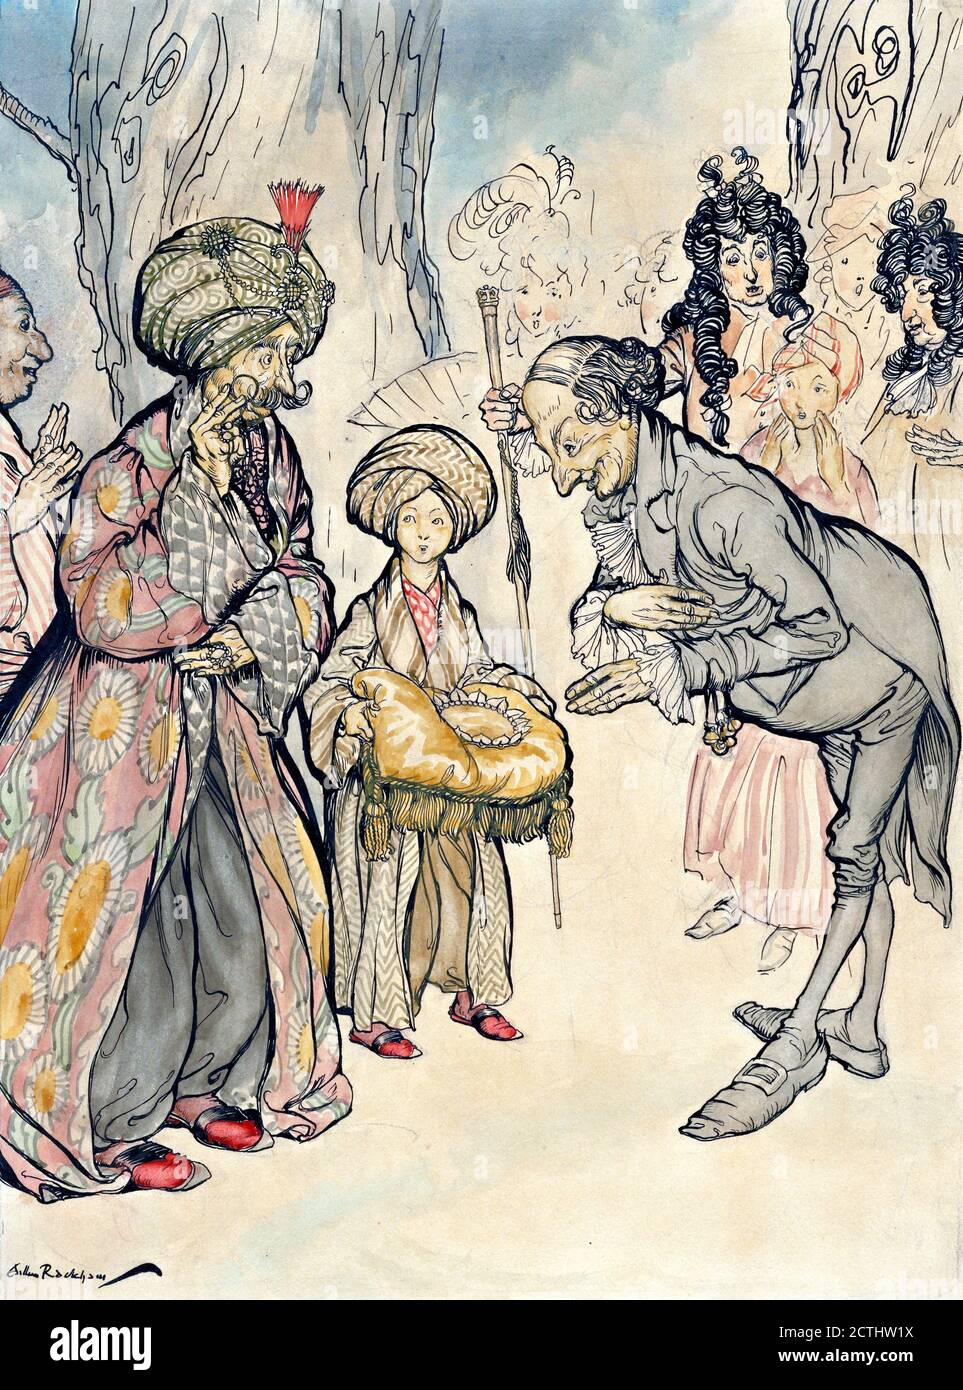 Arthur Rackham (1867-1939). Première esquisse pour une illustration dans Peter Pan, 1906 Banque D'Images